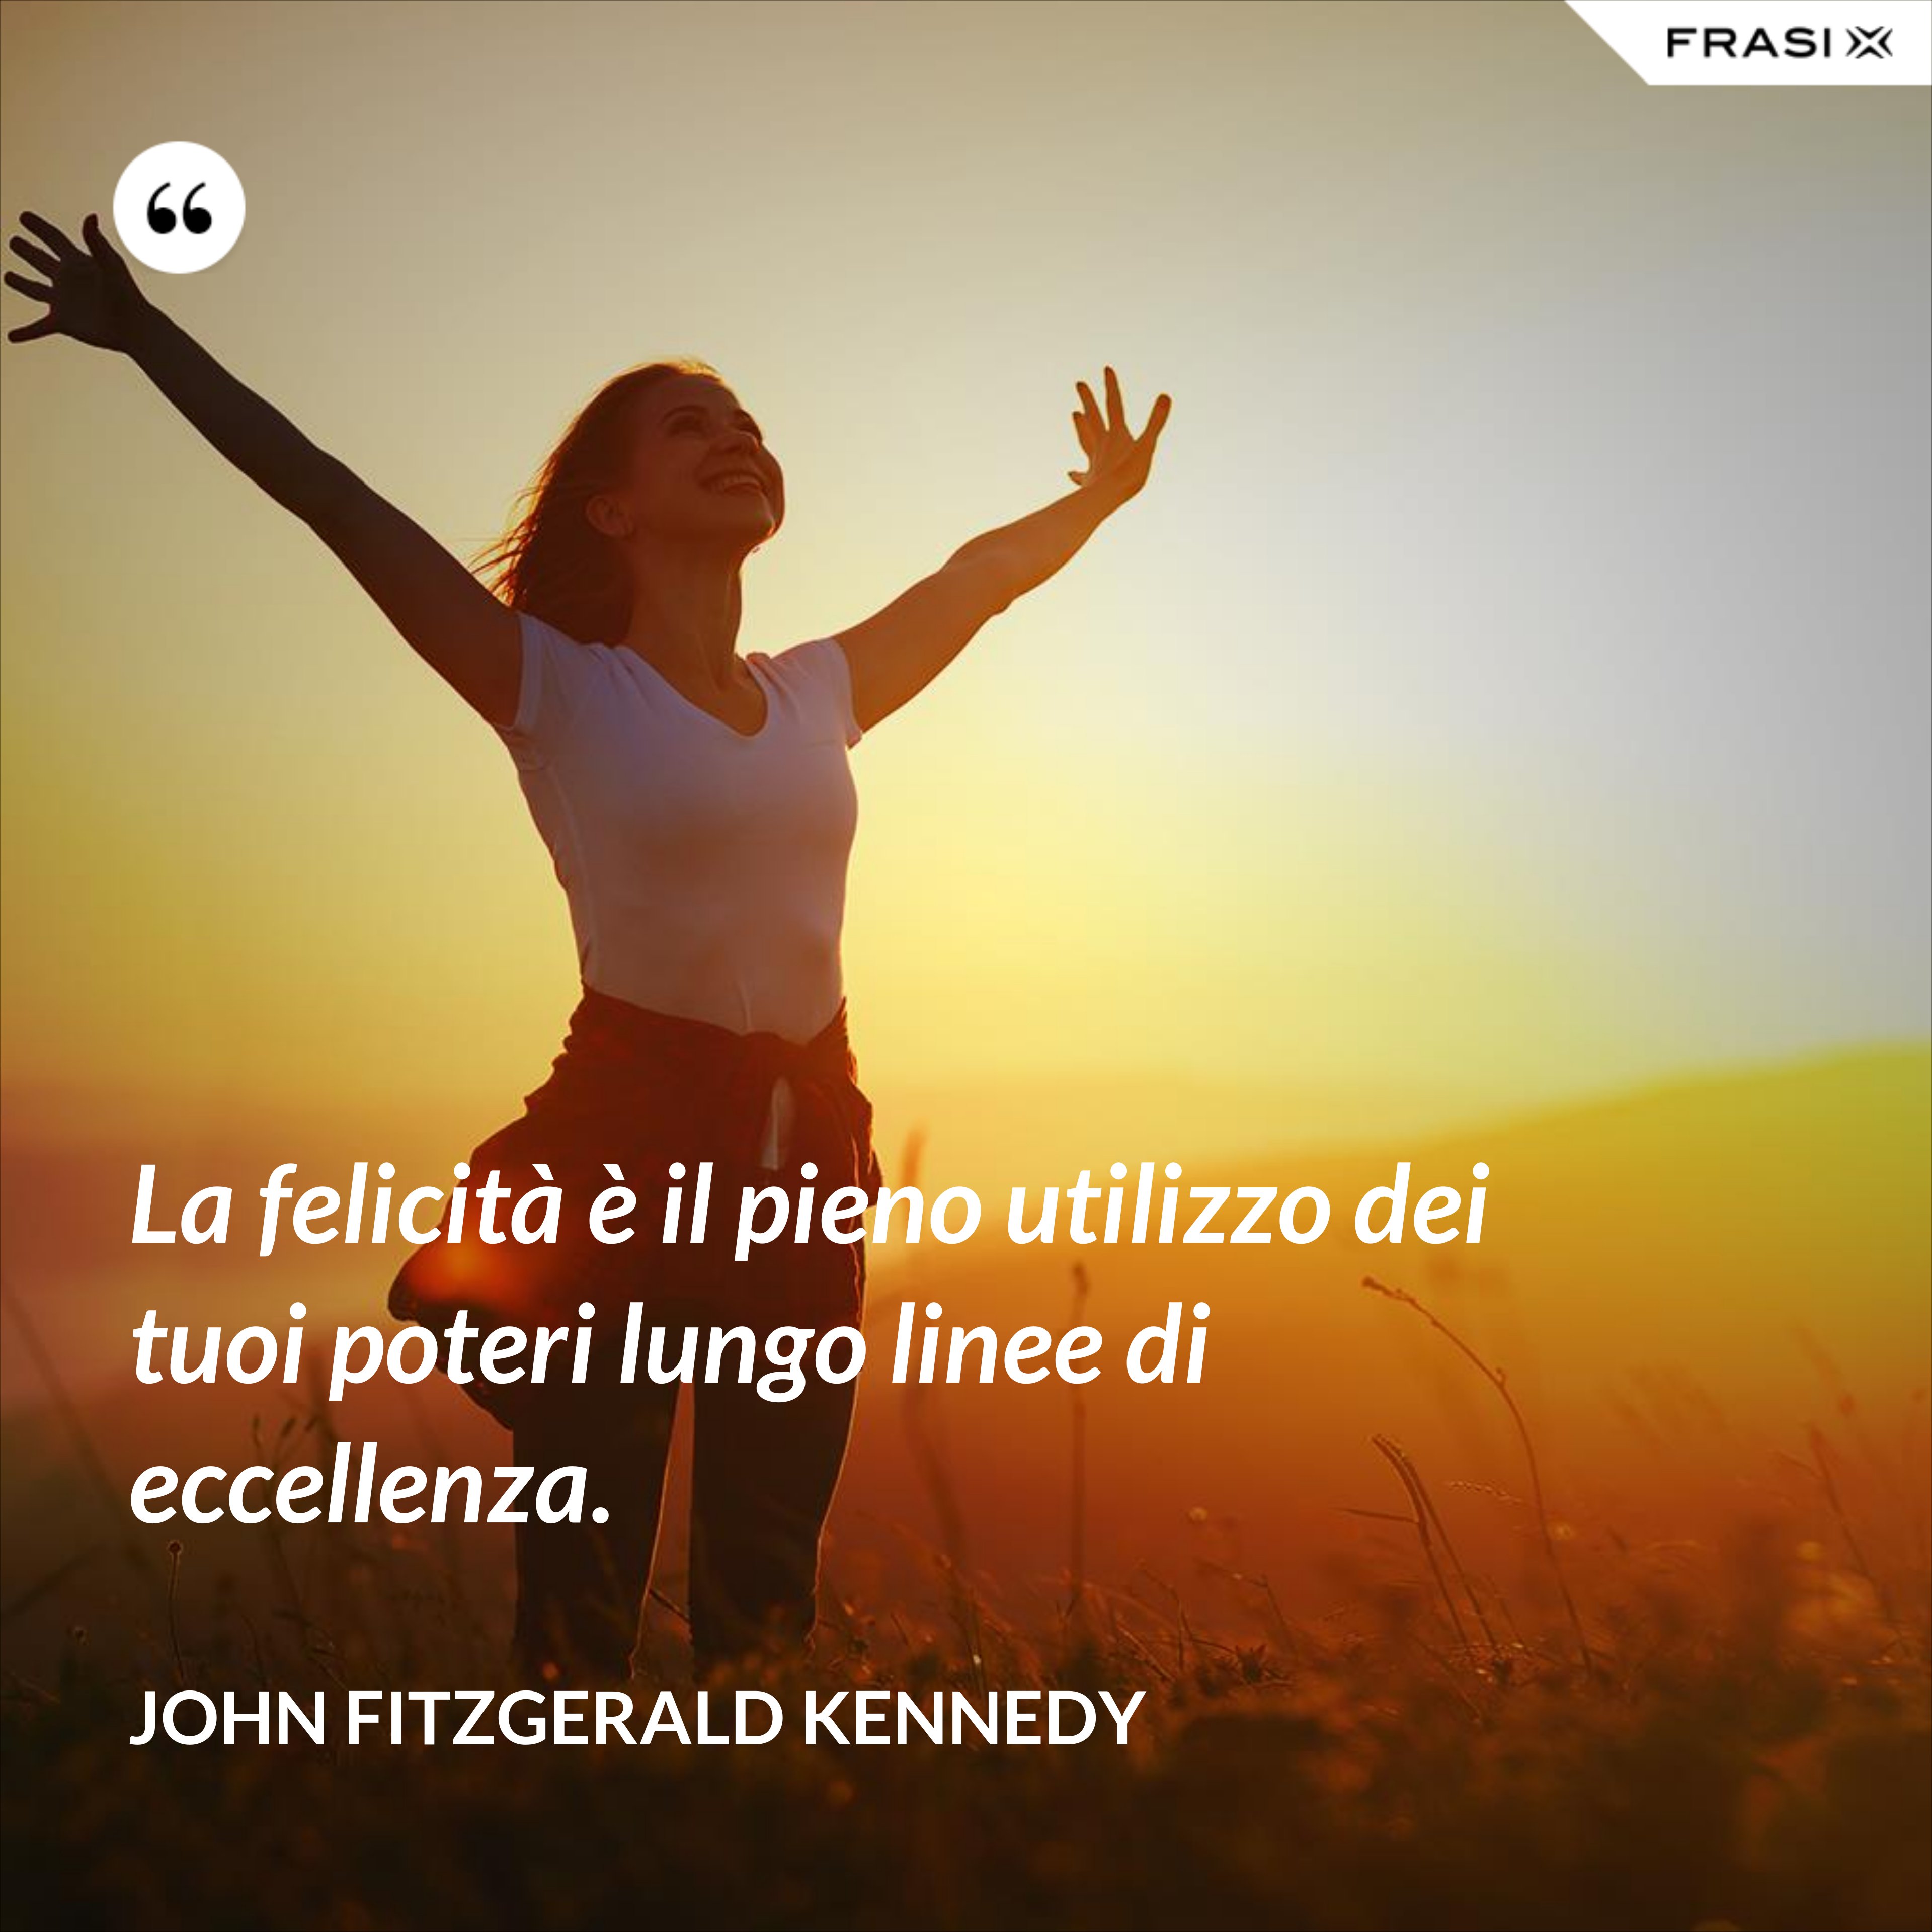 La felicità è il pieno utilizzo dei tuoi poteri lungo linee di eccellenza. - John Fitzgerald Kennedy